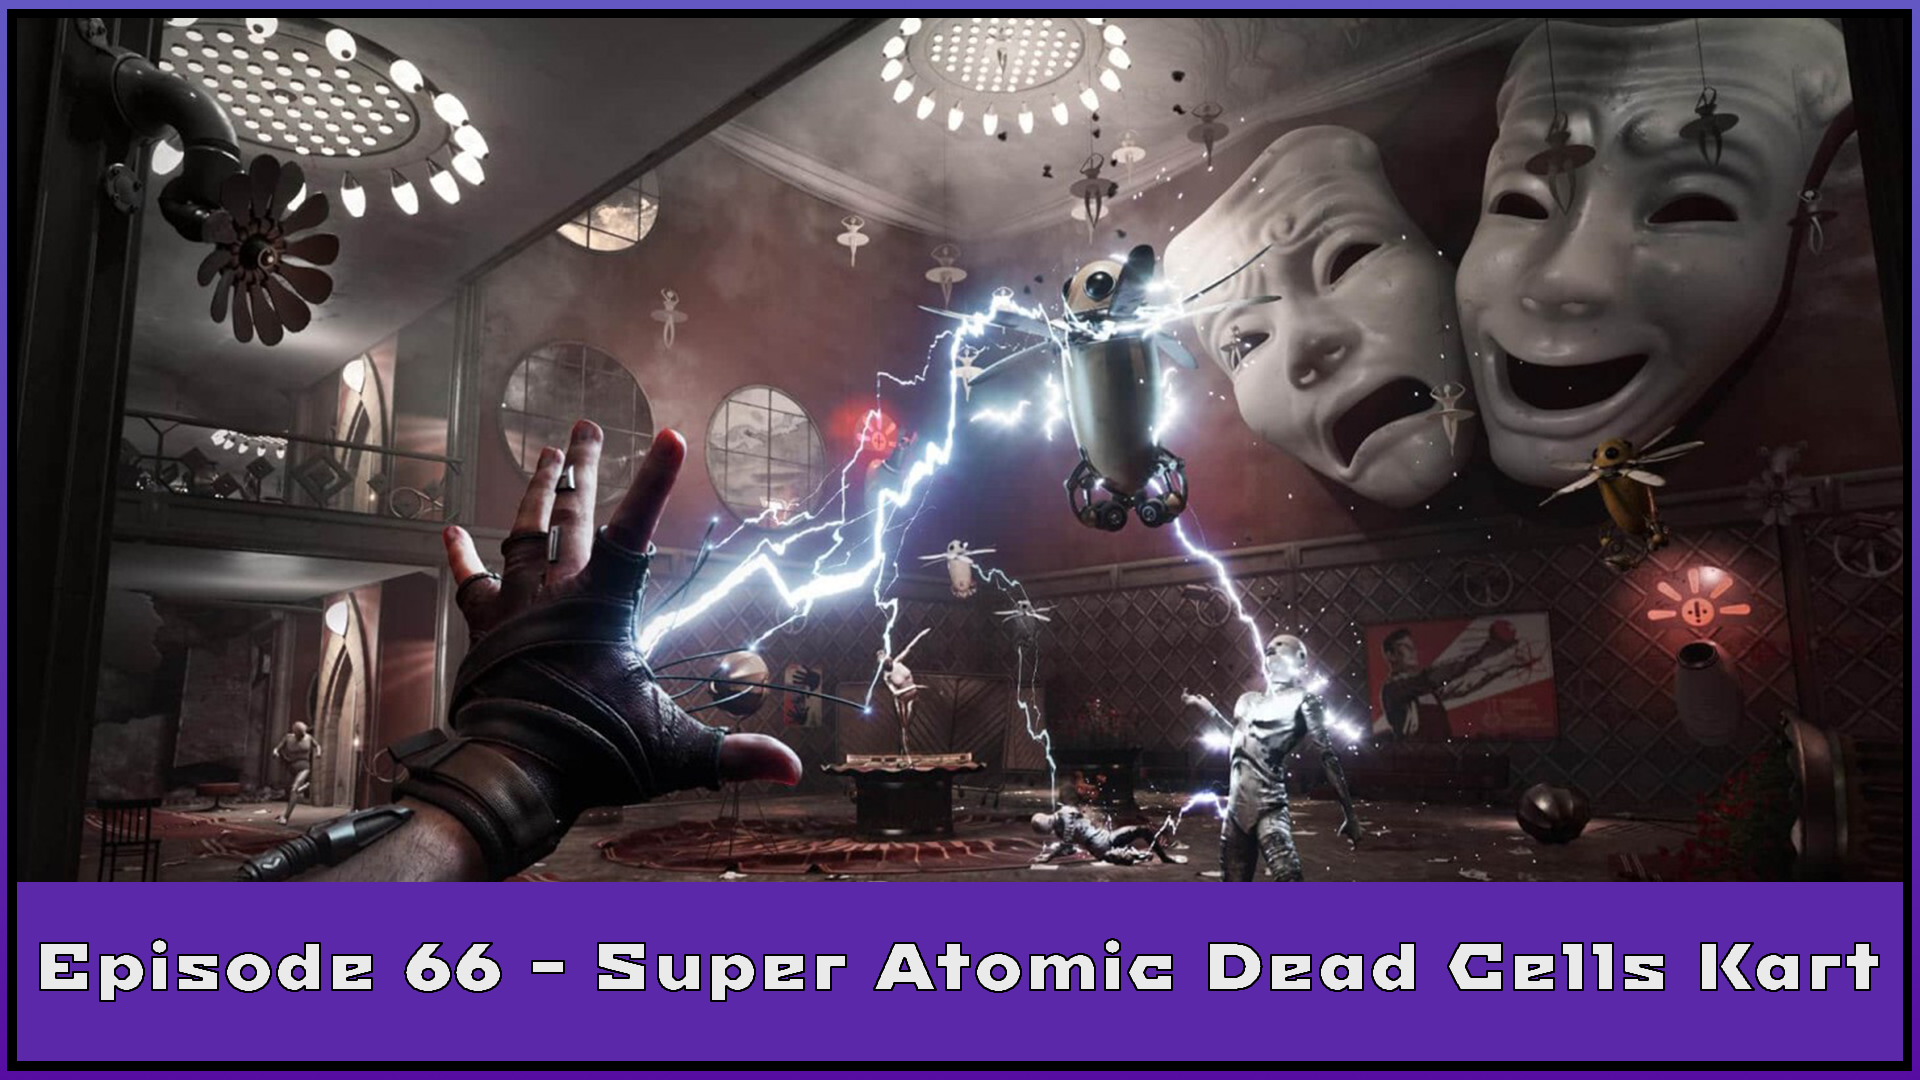 Episode 66 - Super Atomic Dead Cells Kart